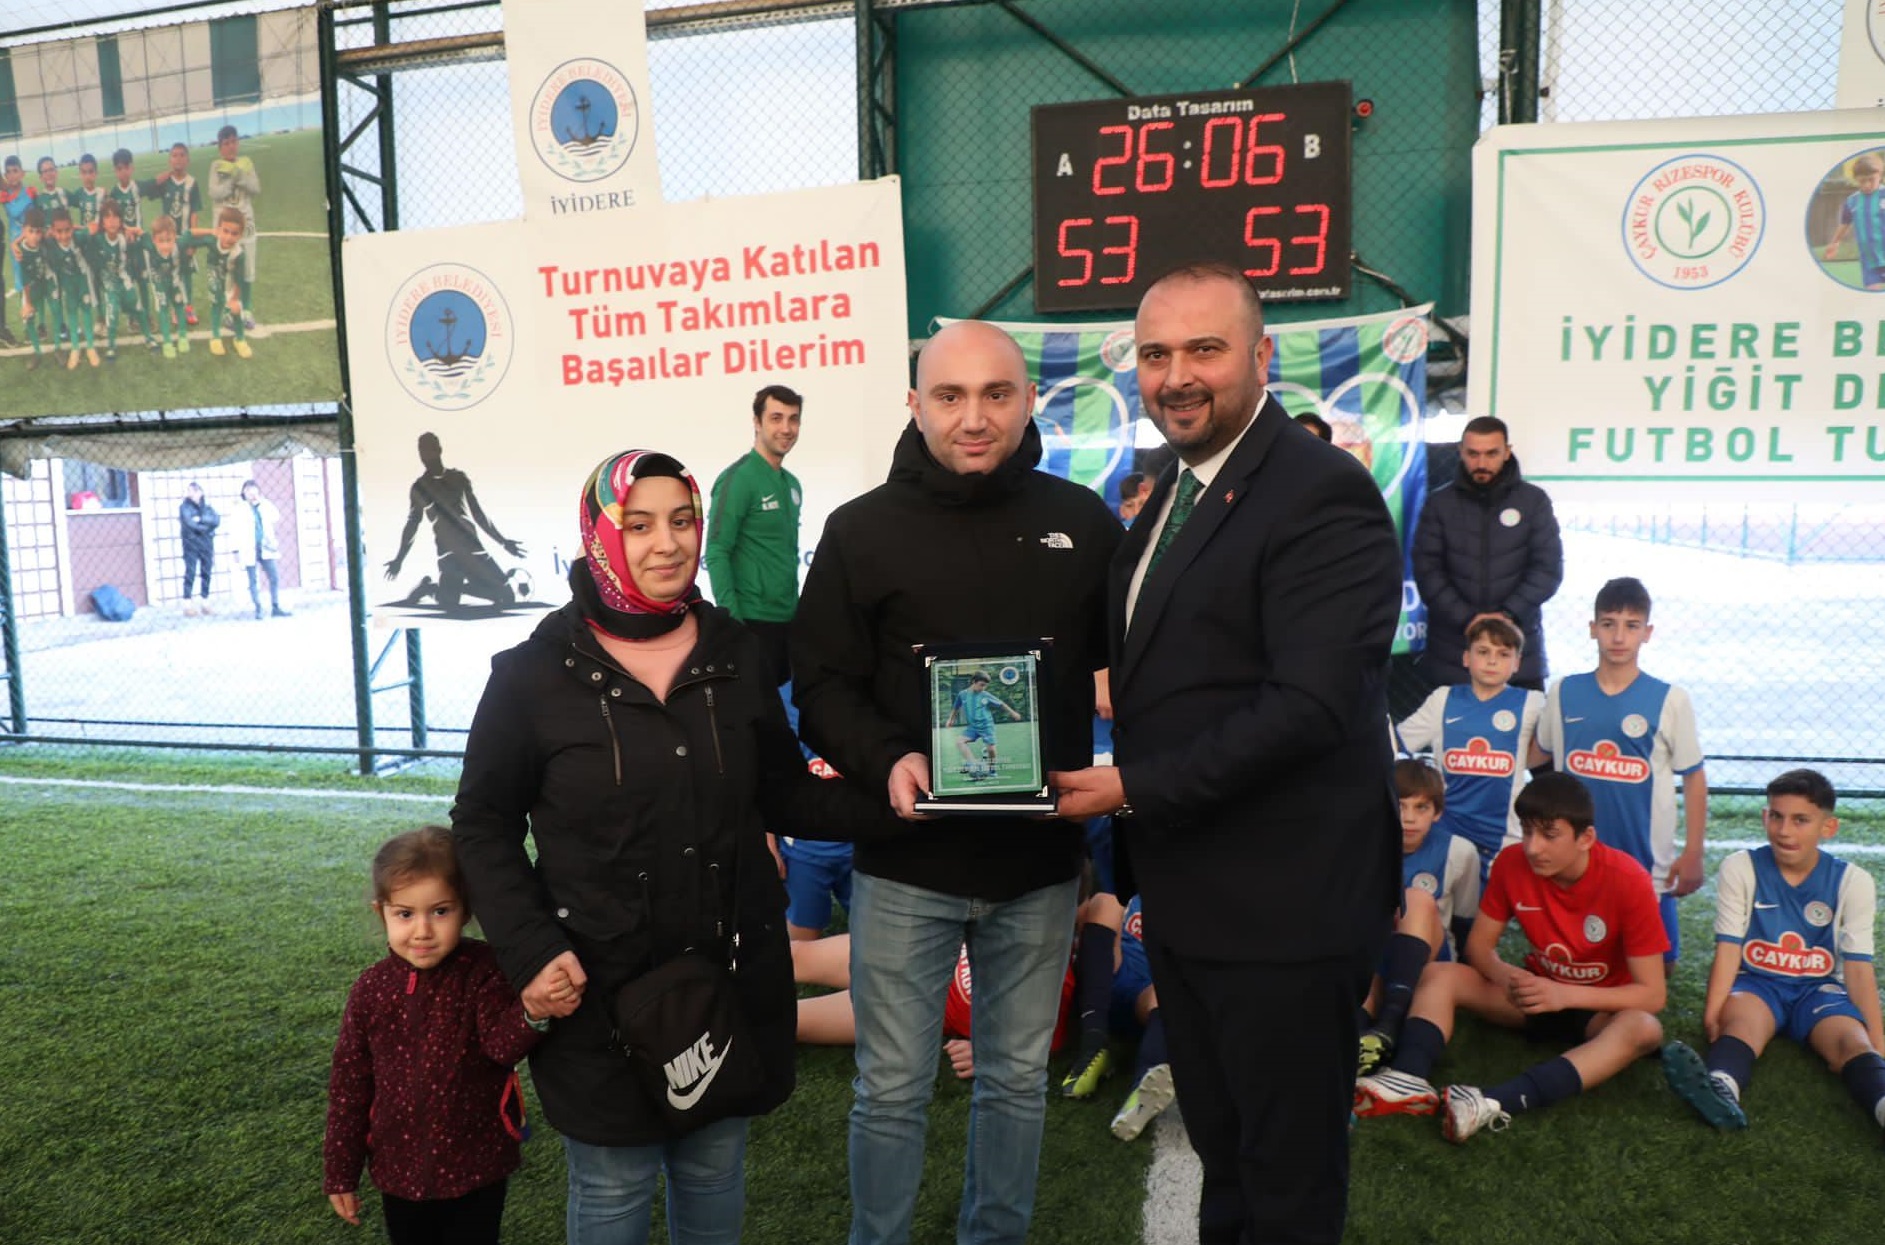 İyidere’de Düzenlenen, Yiğit Demirel Futbol Turnuvası Sona Erdi